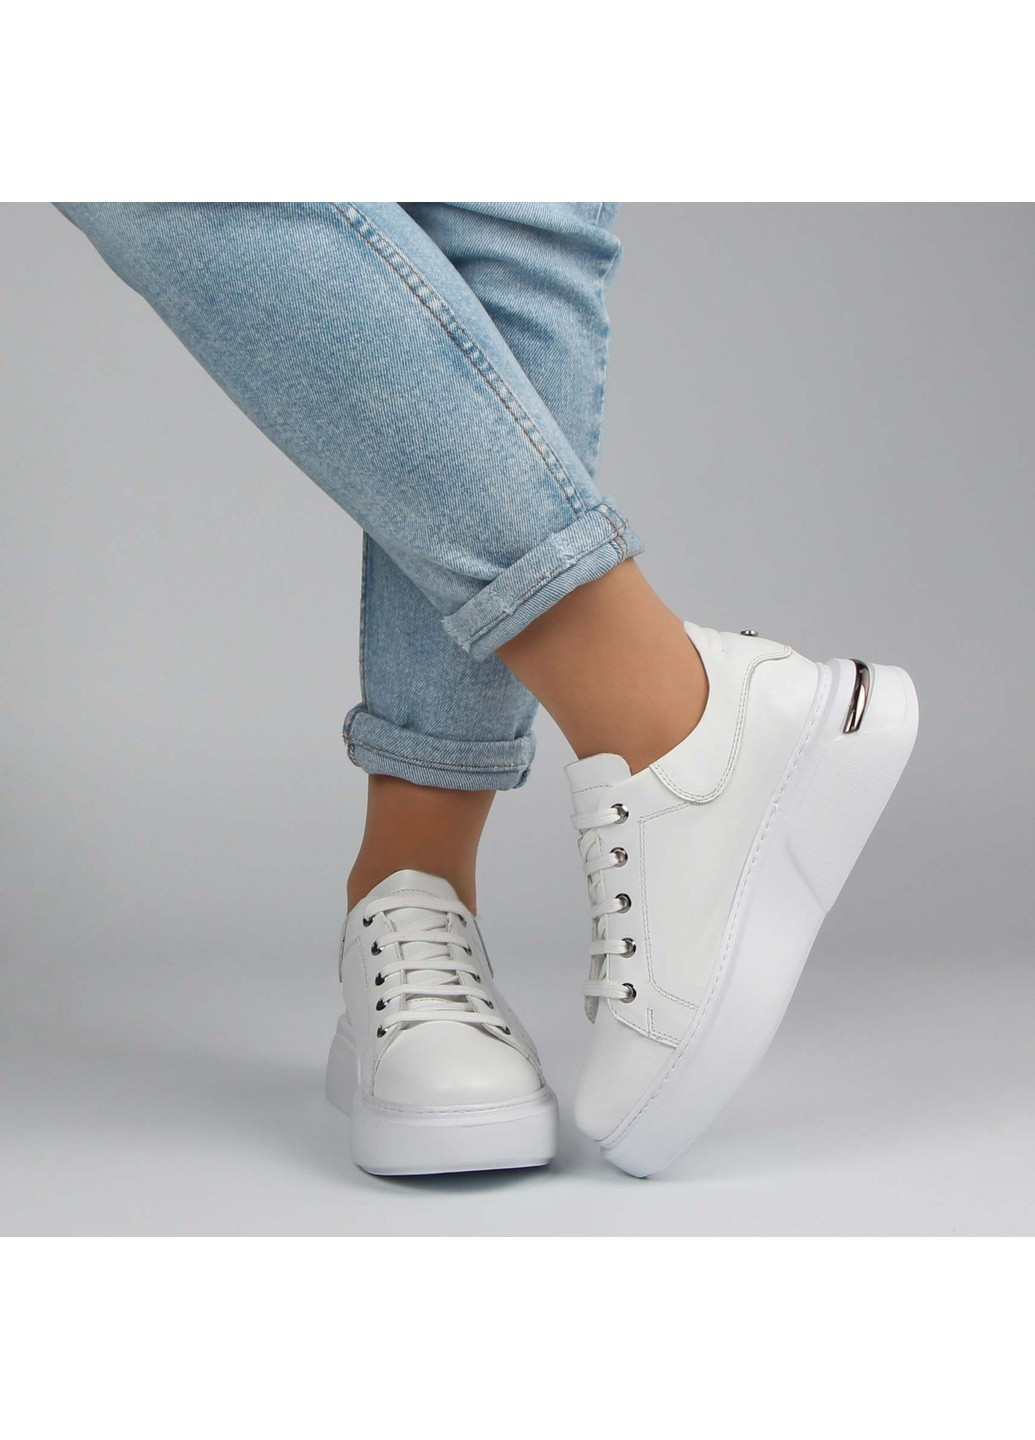 Белые демисезонные женские кроссовки 197185 Buts